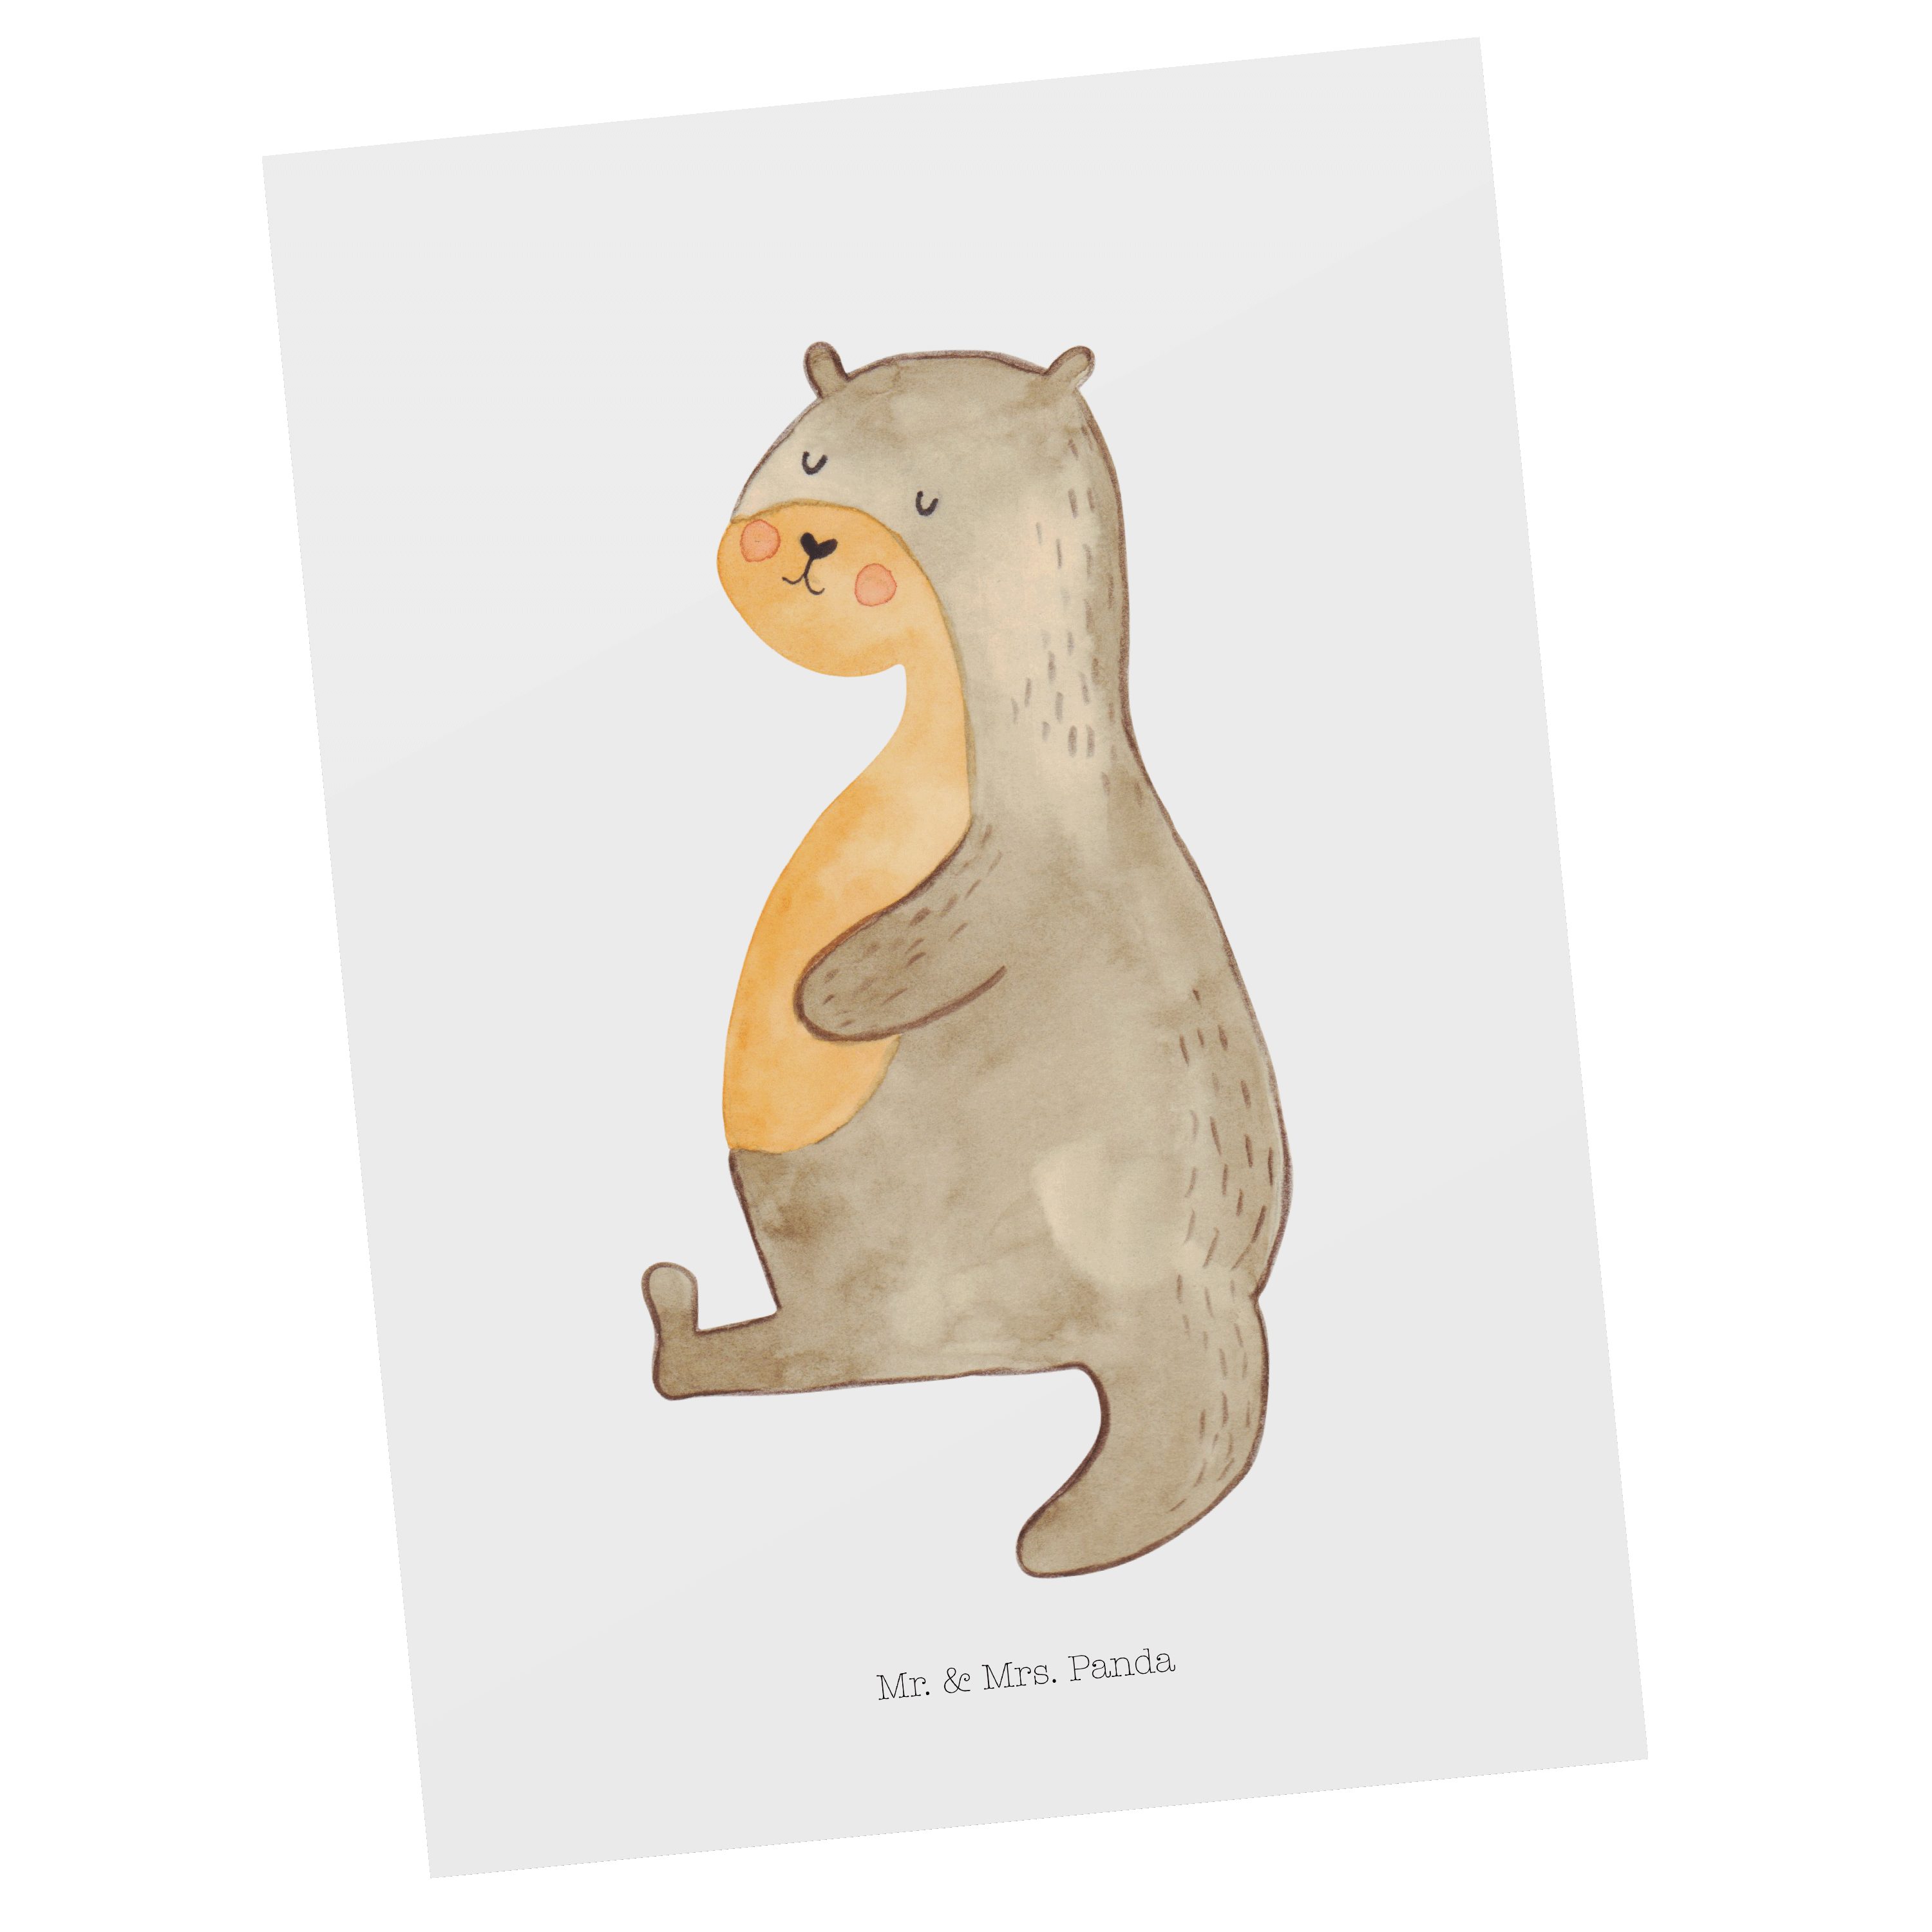 Mr. & Mrs. Panda Postkarte Otter Bauch - Weiß - Geschenk, Seeotter, zufrieden, Einladung, Einlad